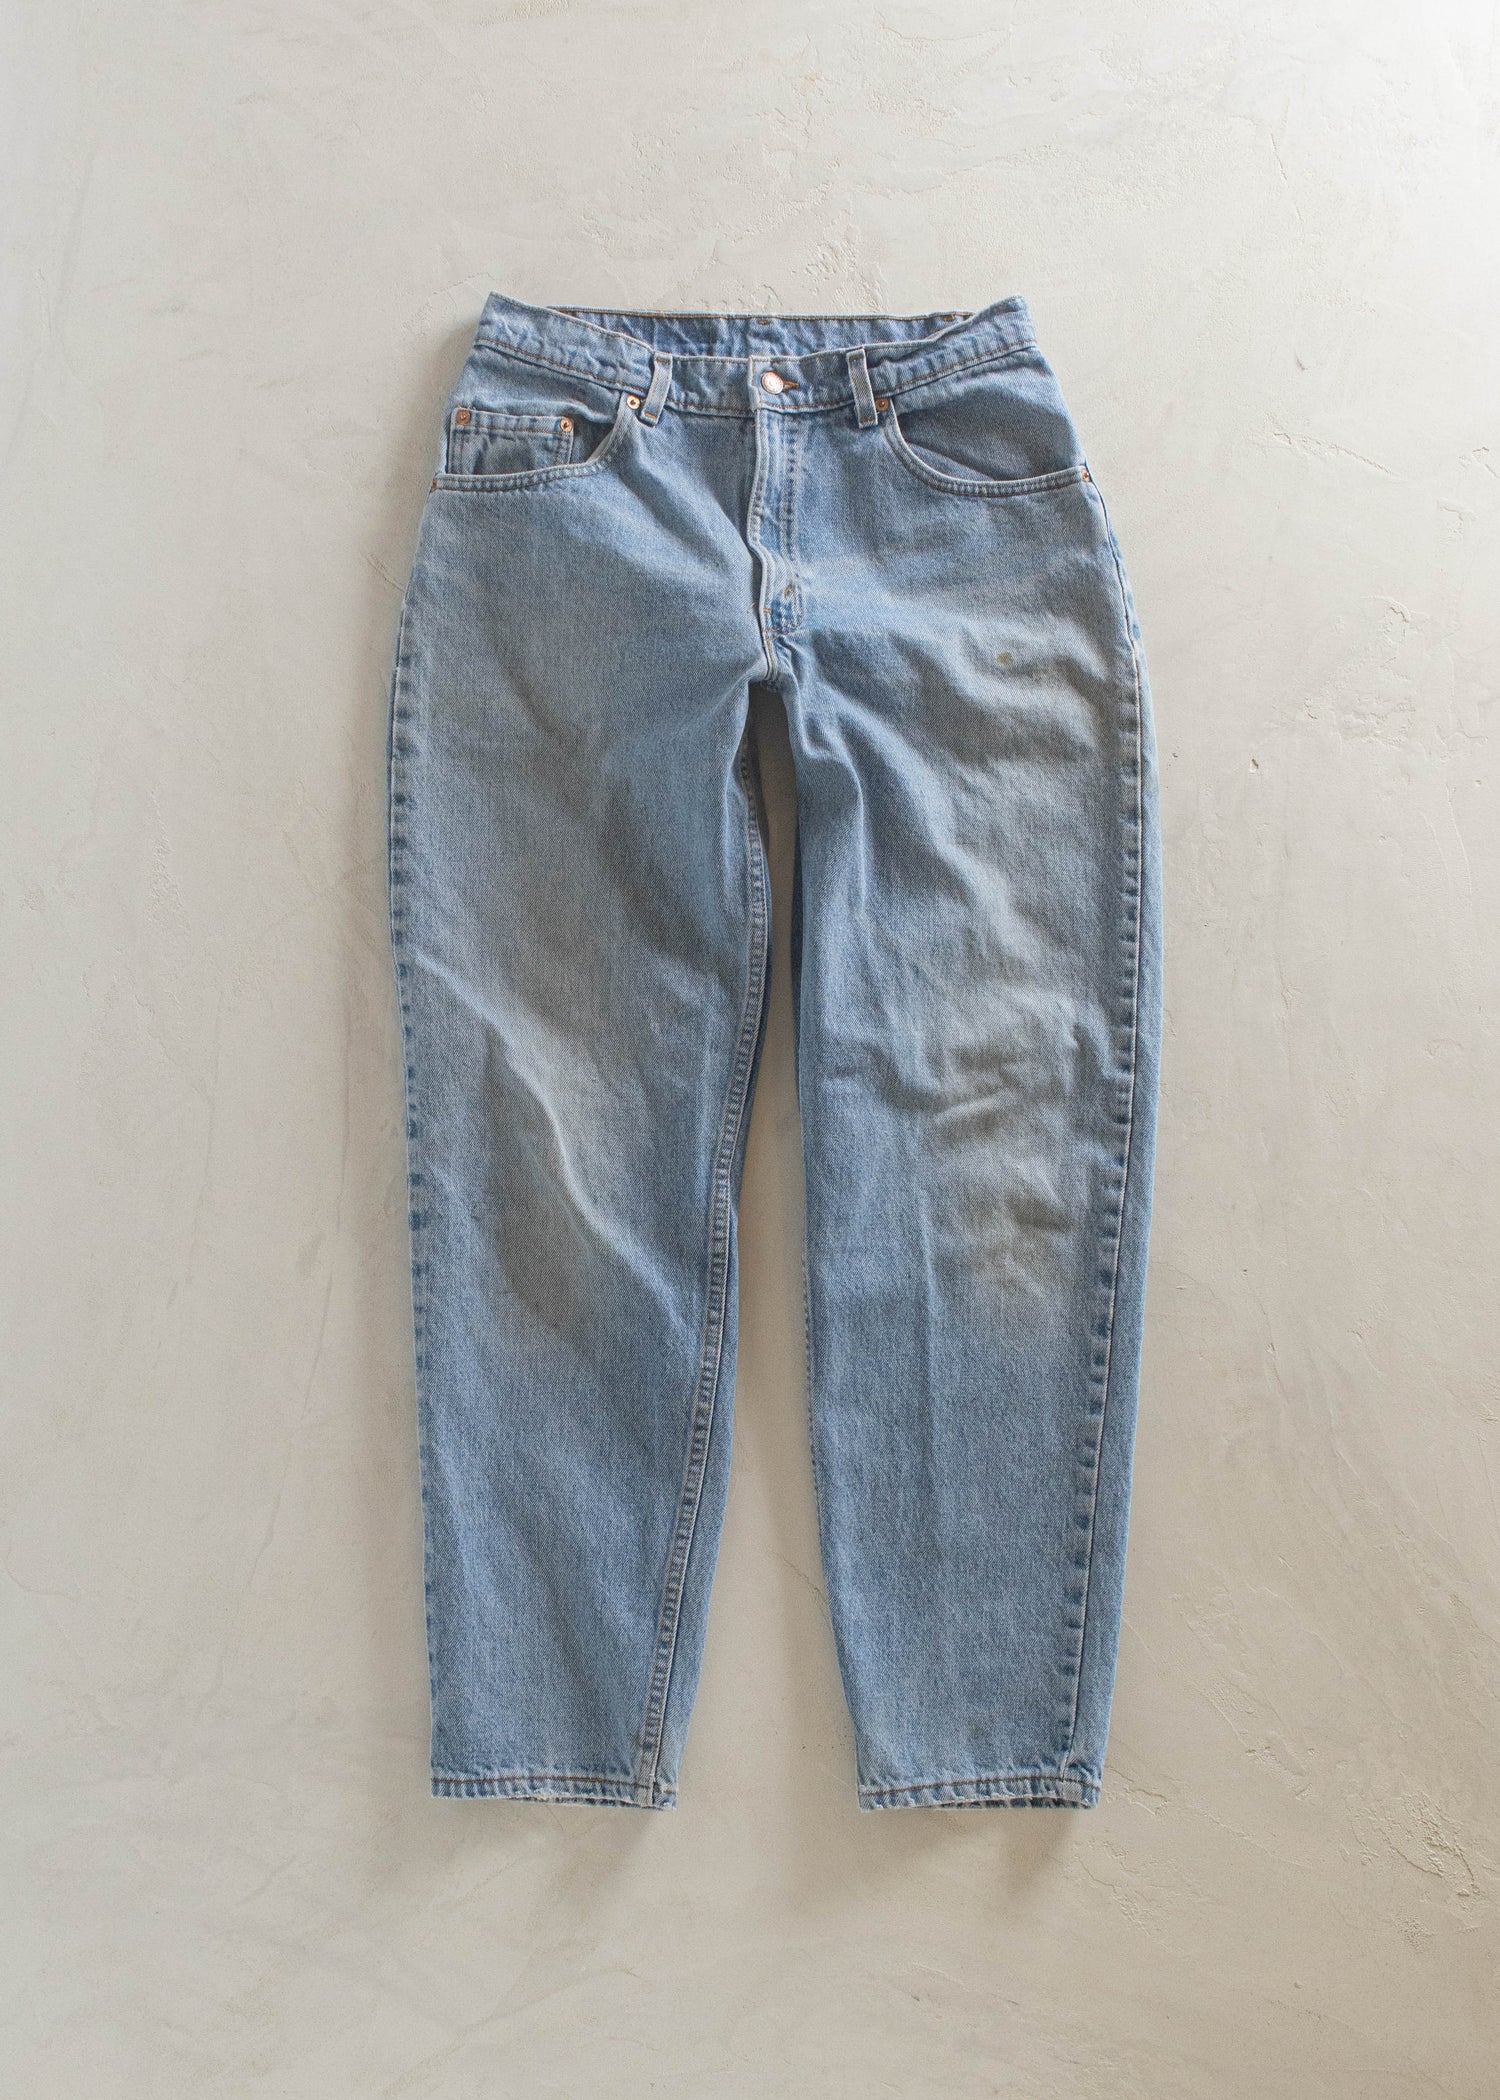 1980s Levi's 560 Lightwash Jeans Size Women's 29 Men's 32 – Palmo Goods